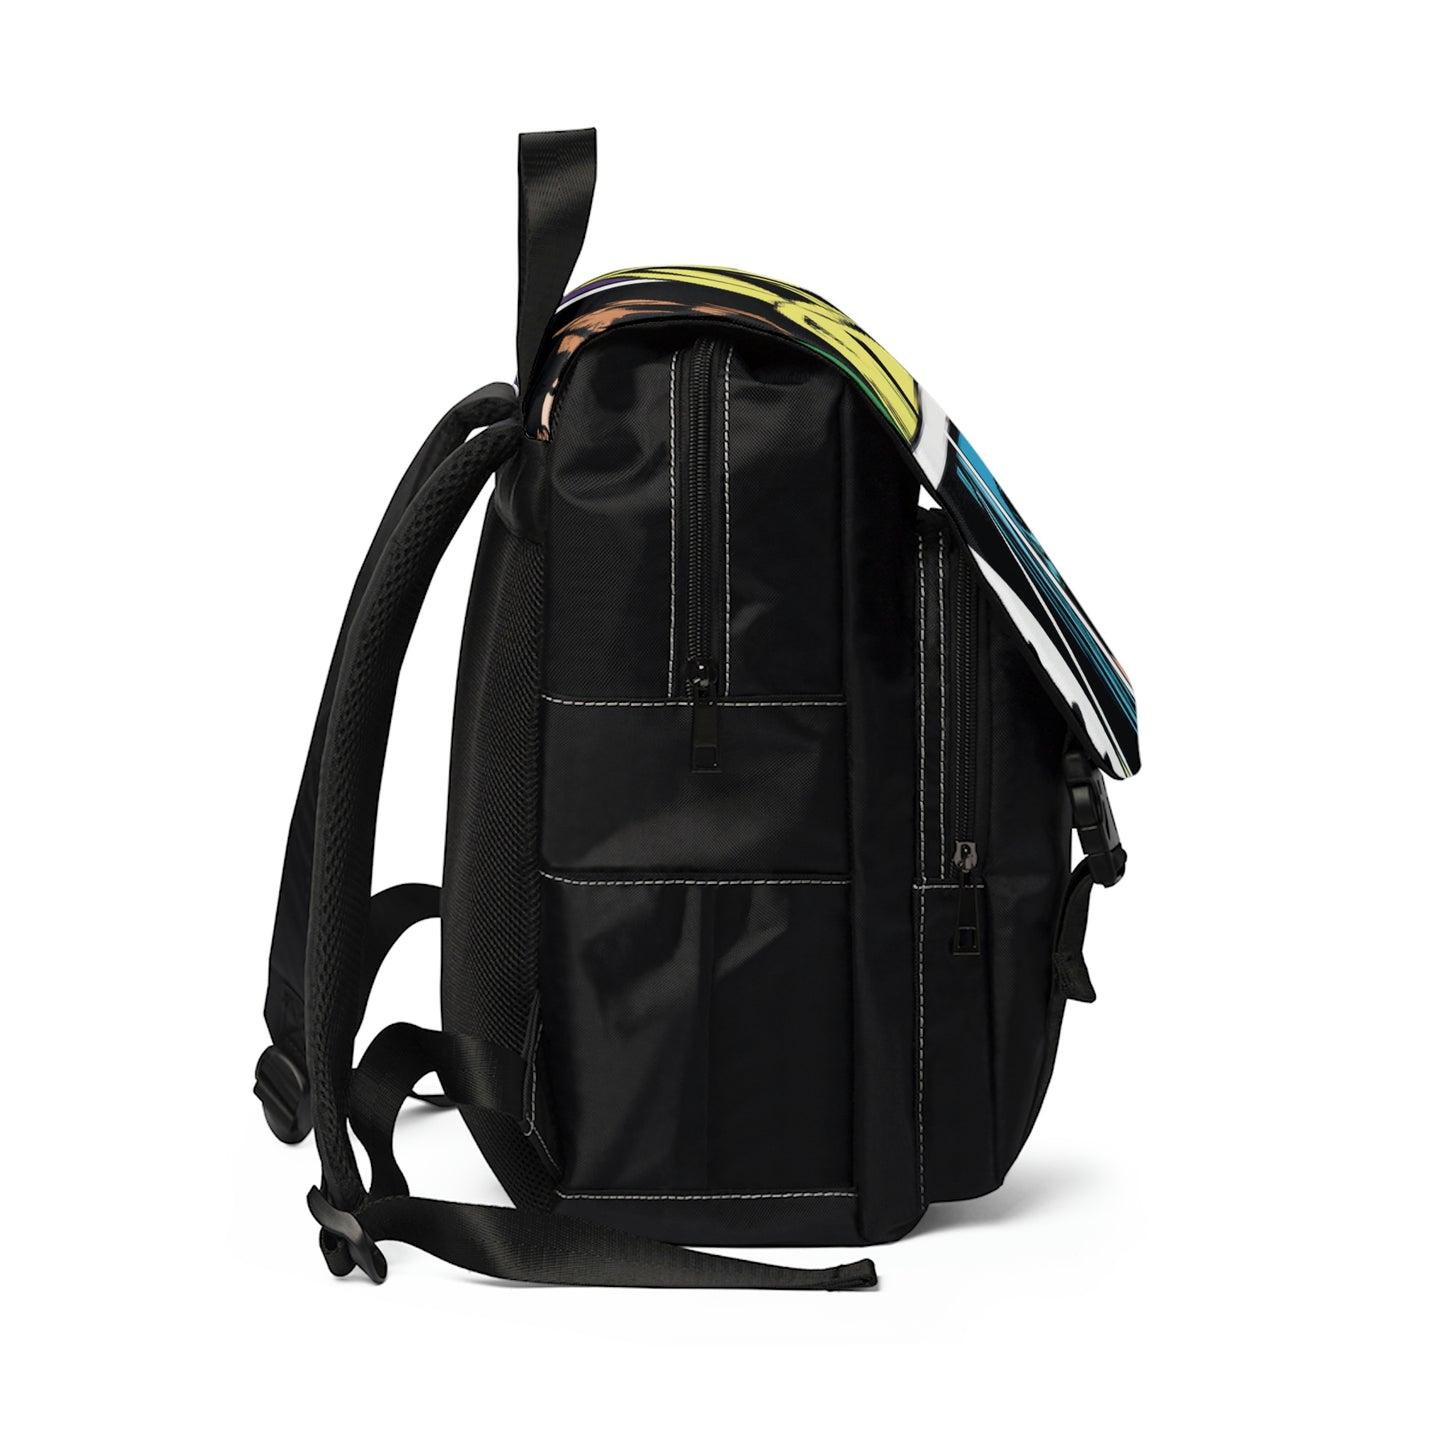 Monetière - Comic Book Shoulder Travel Backpack Bag